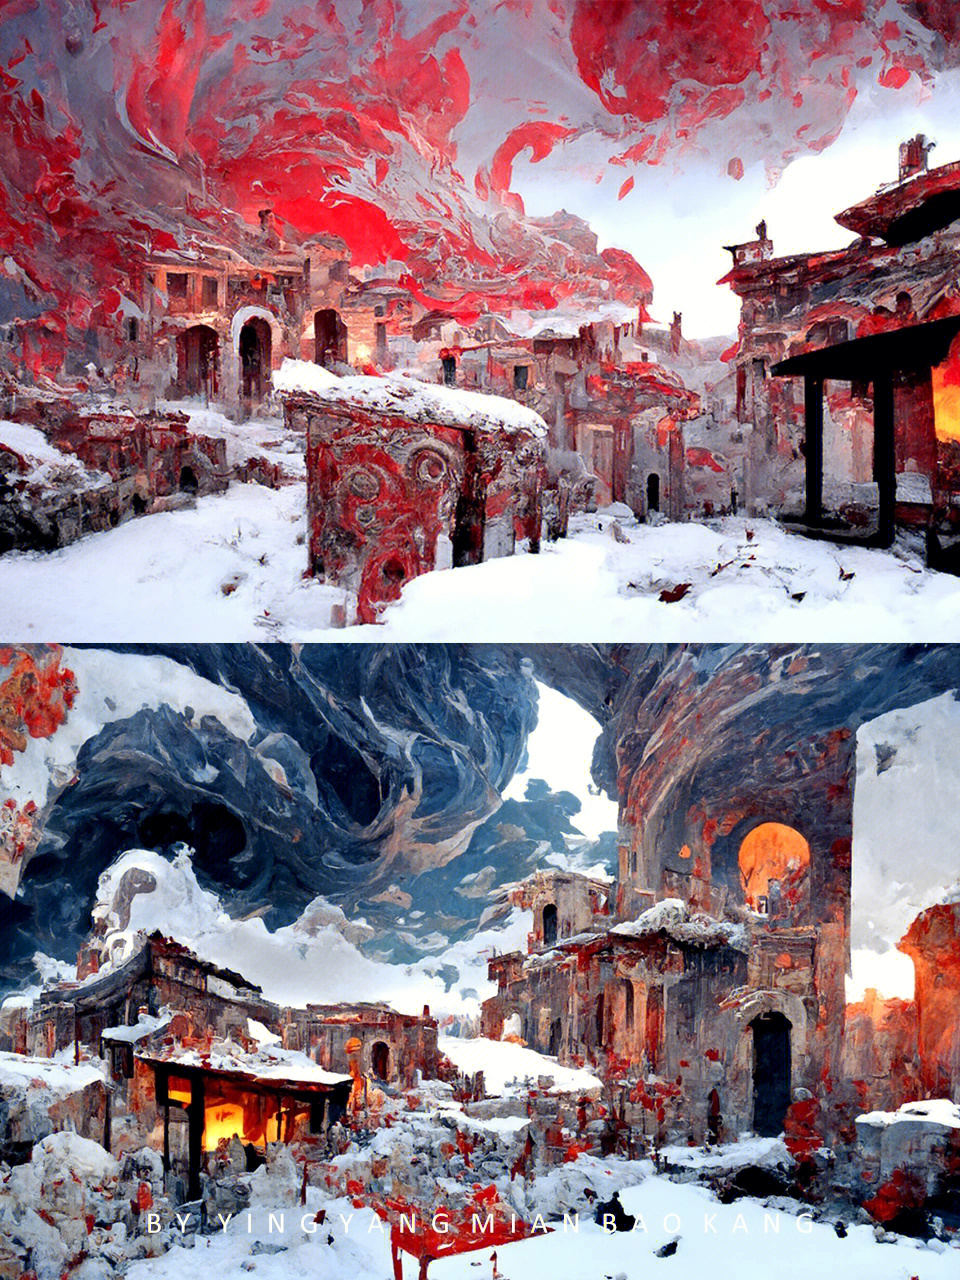 庞贝古城复原图图片